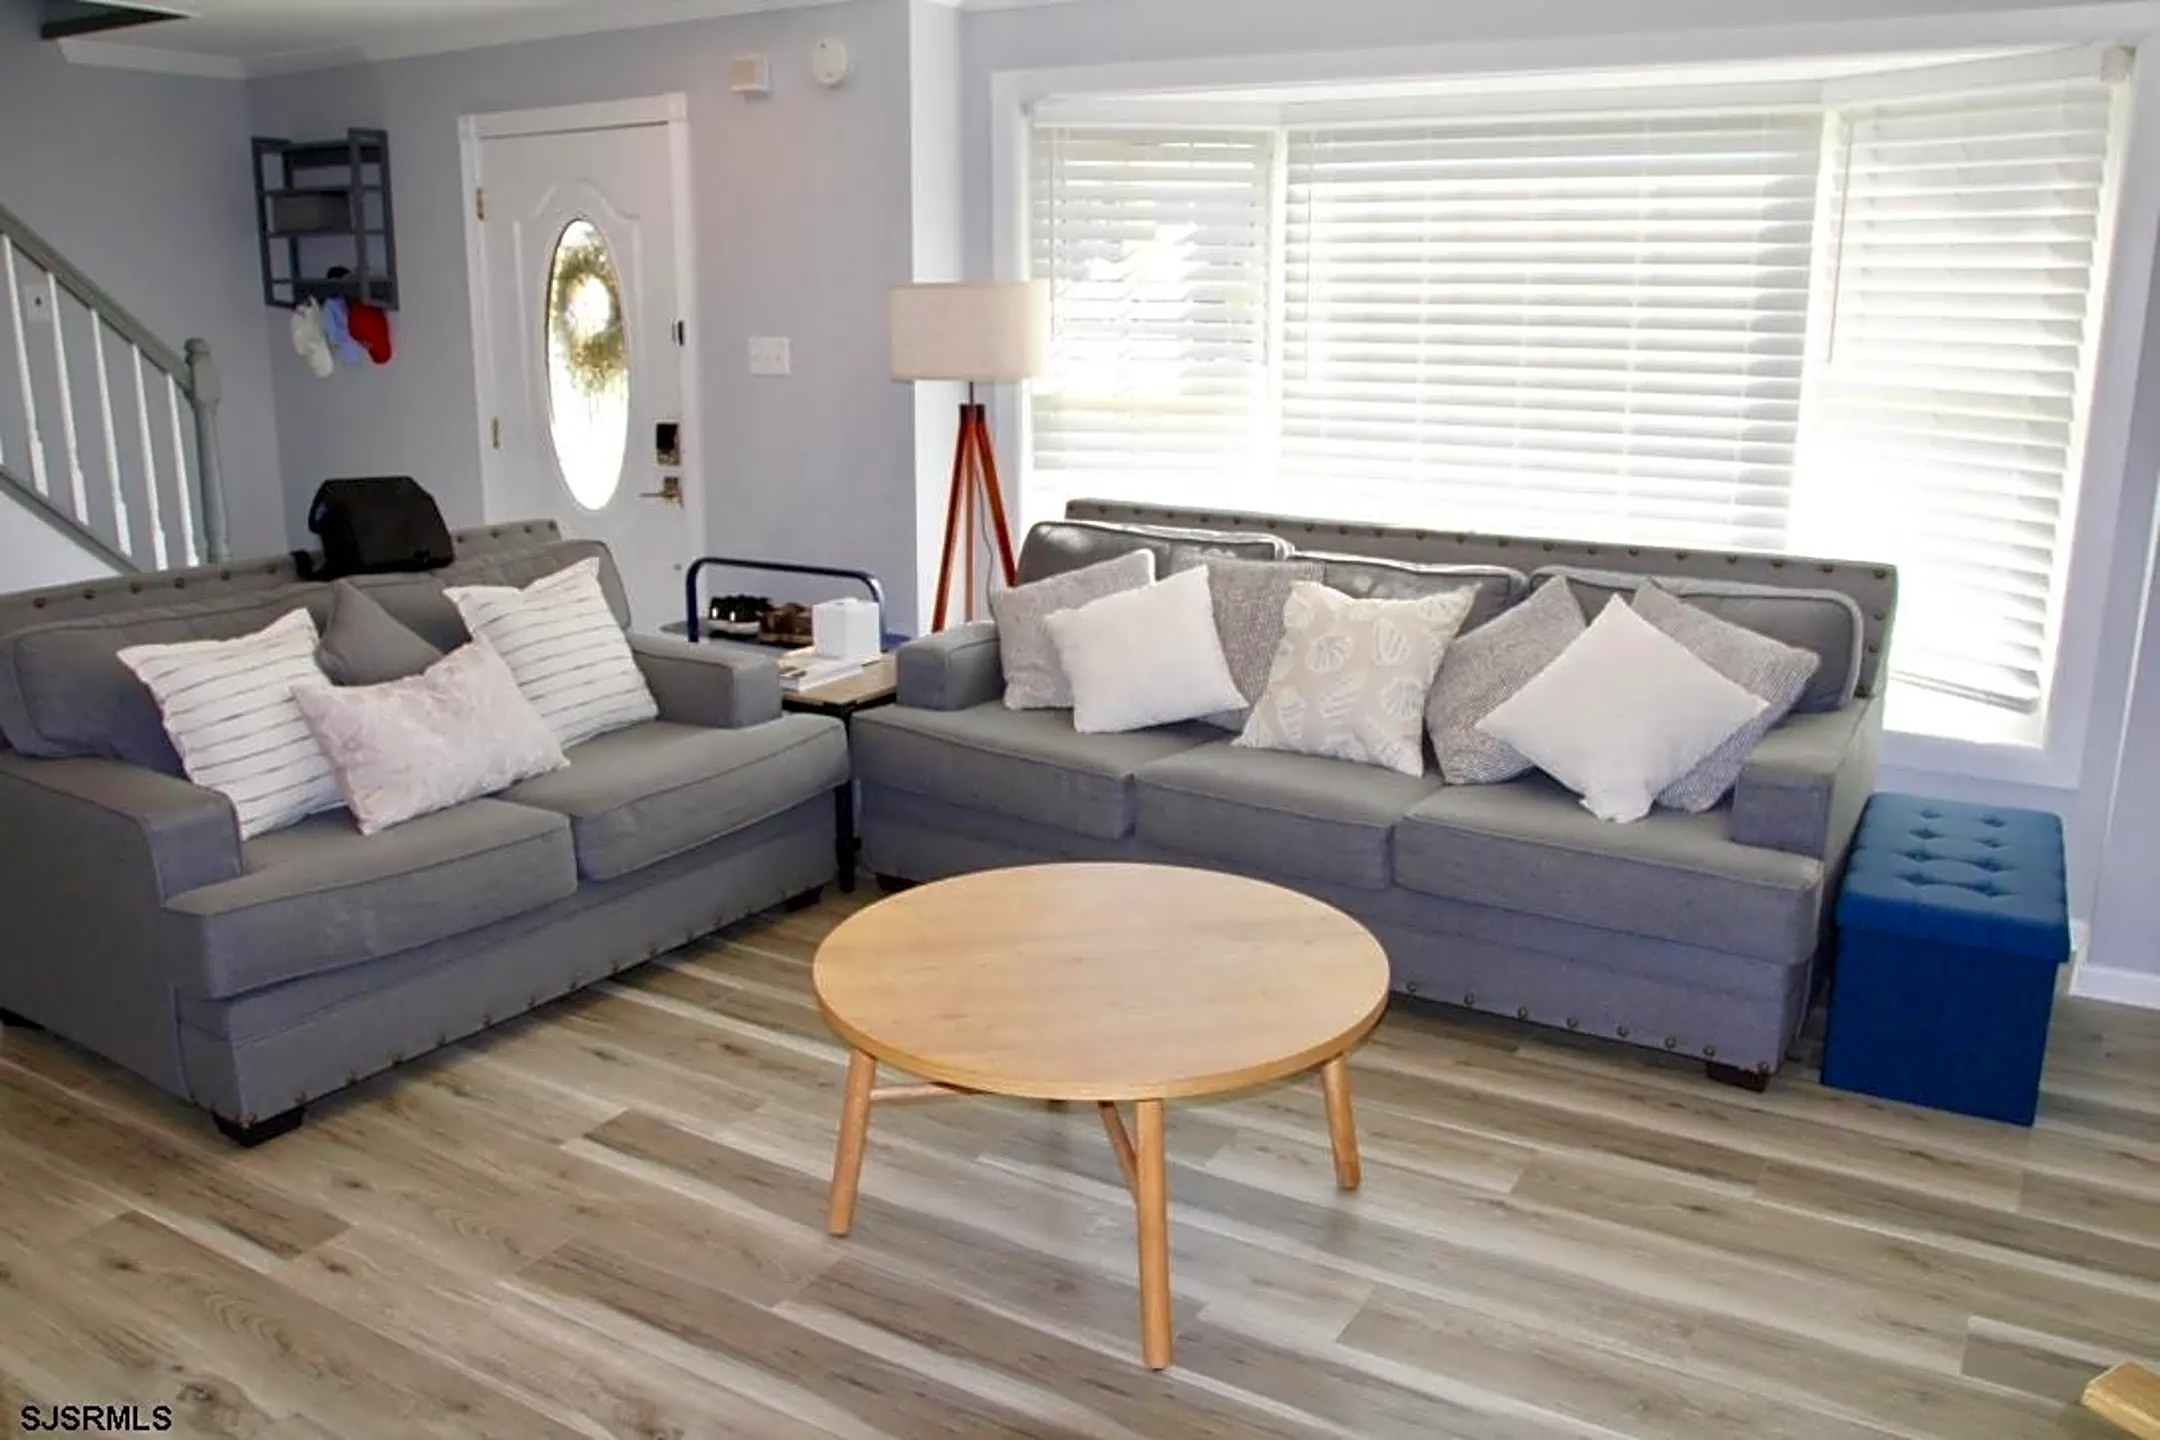 Living Room - 4509 Harbor Beach Blvd - Brigantine, NJ